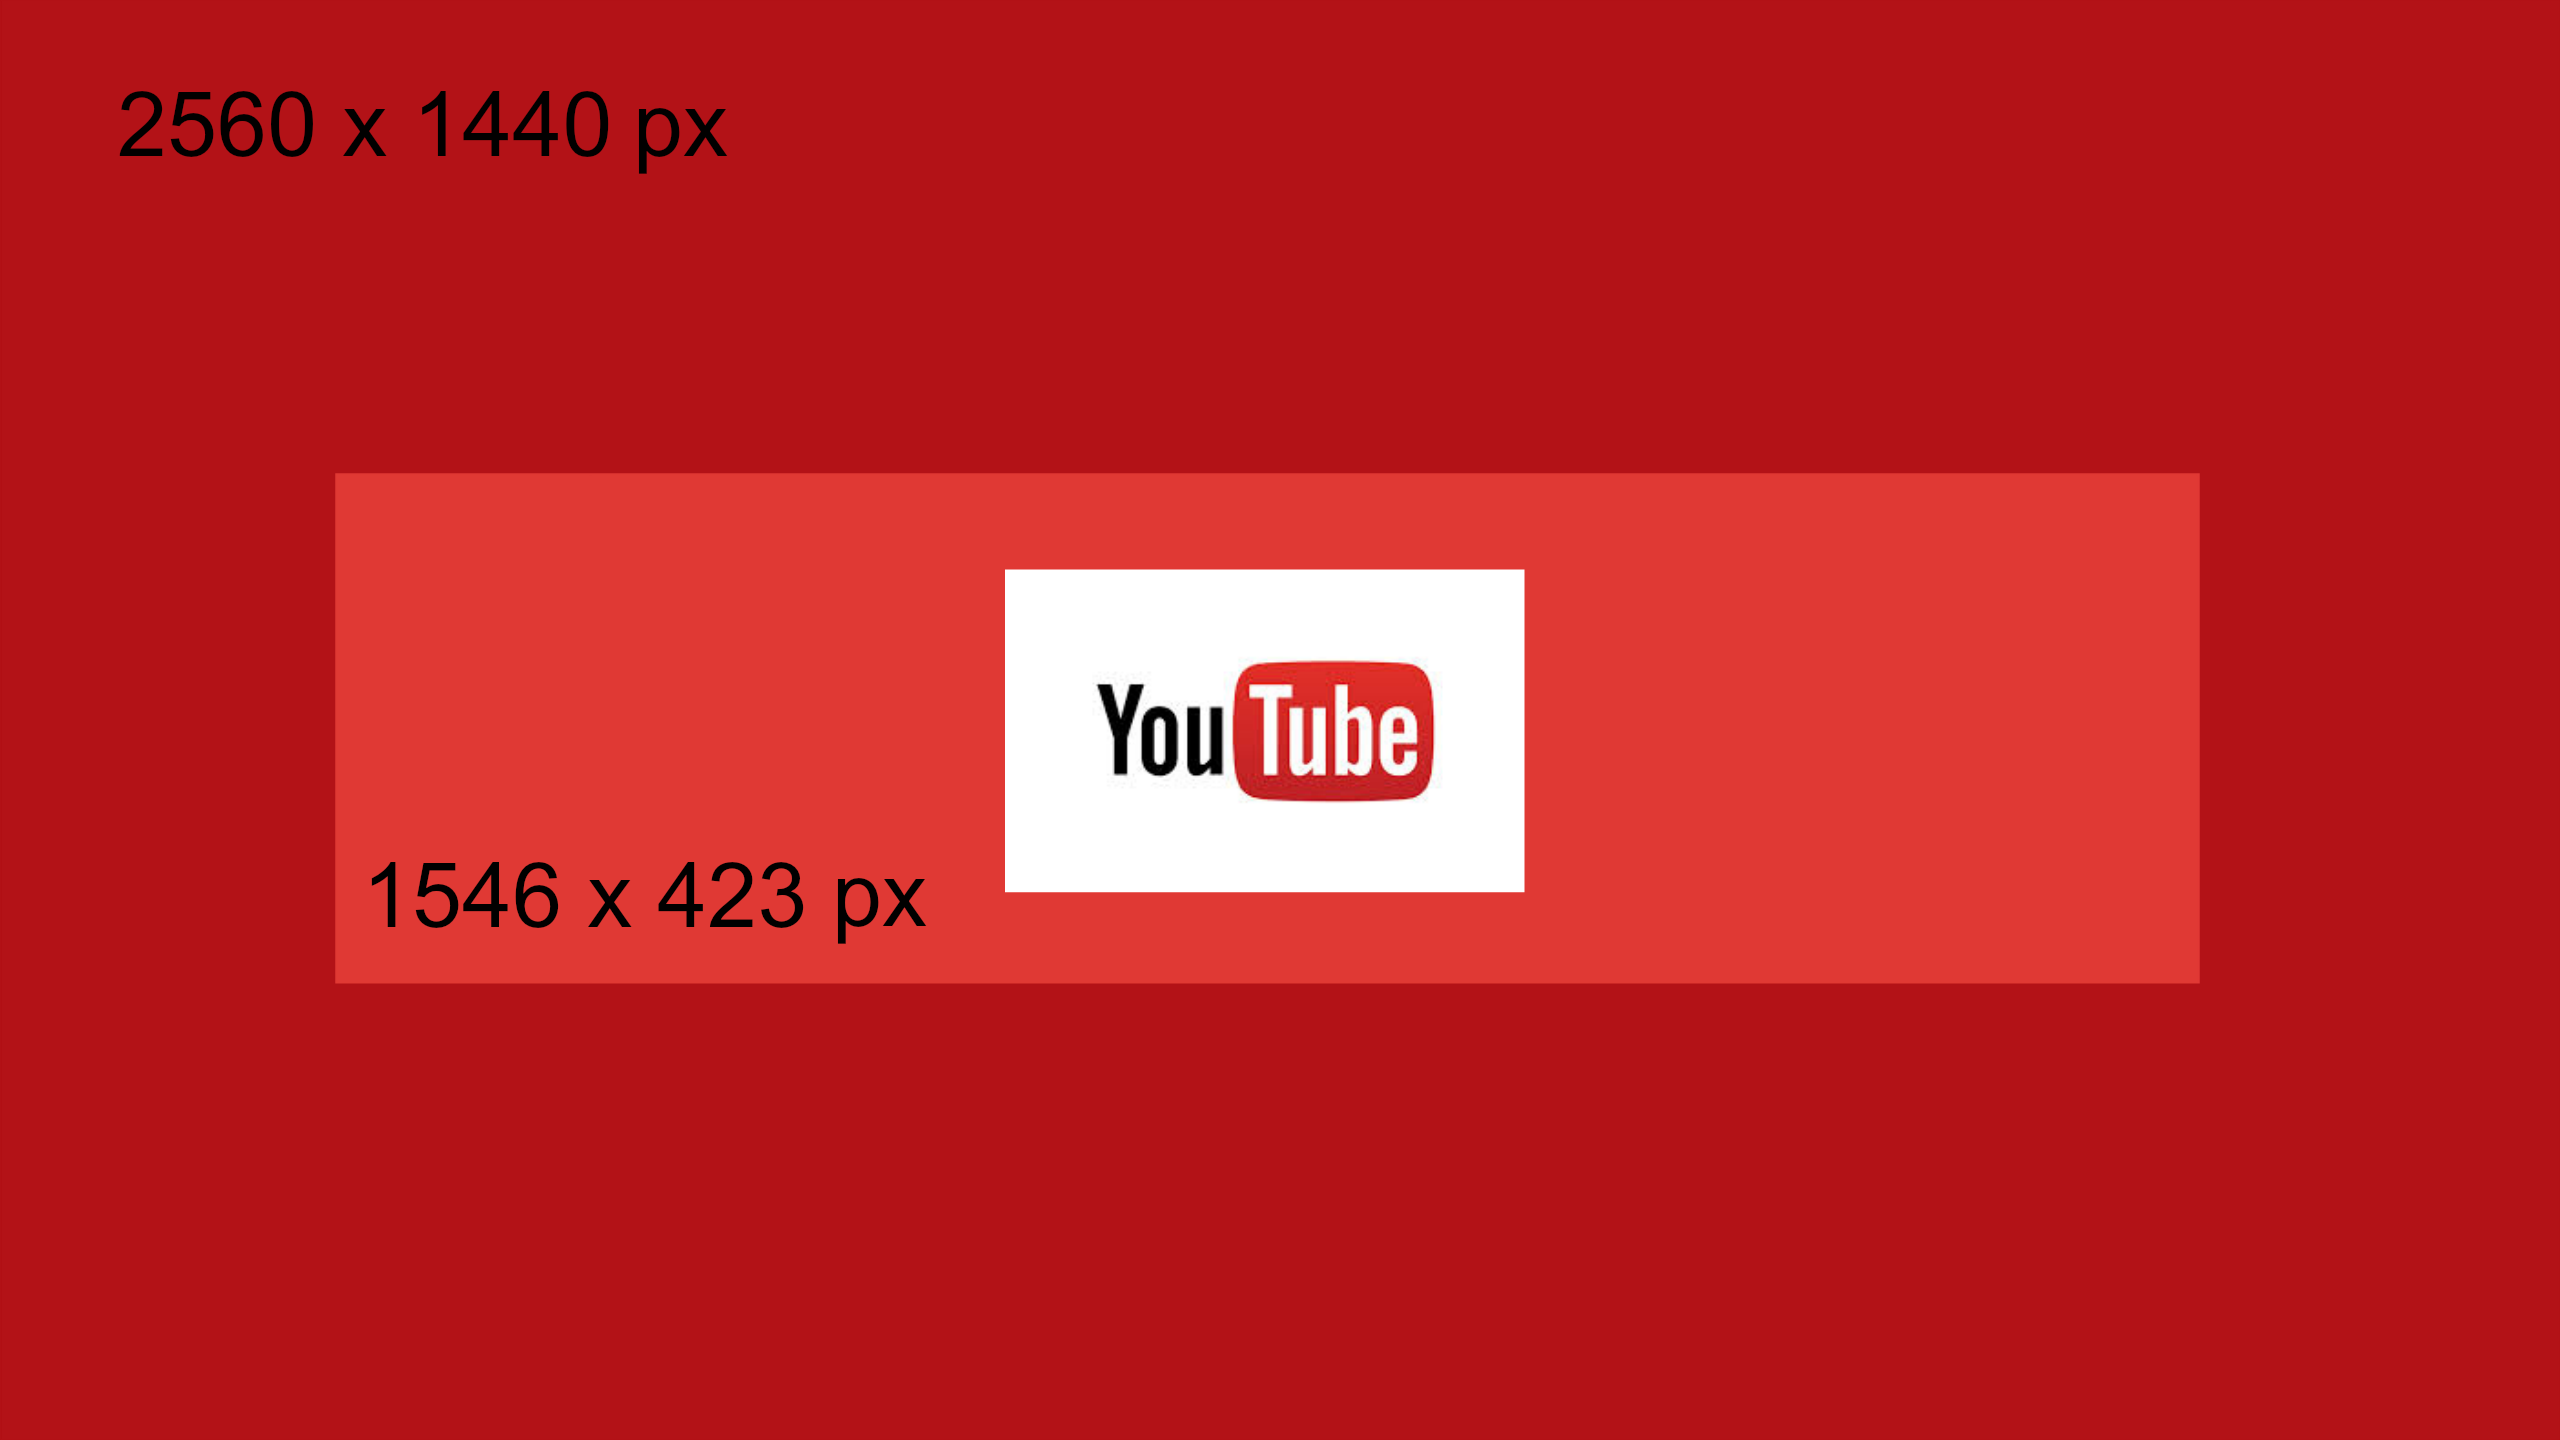 Youtube Wallpapers Hd Pixelstalk Net